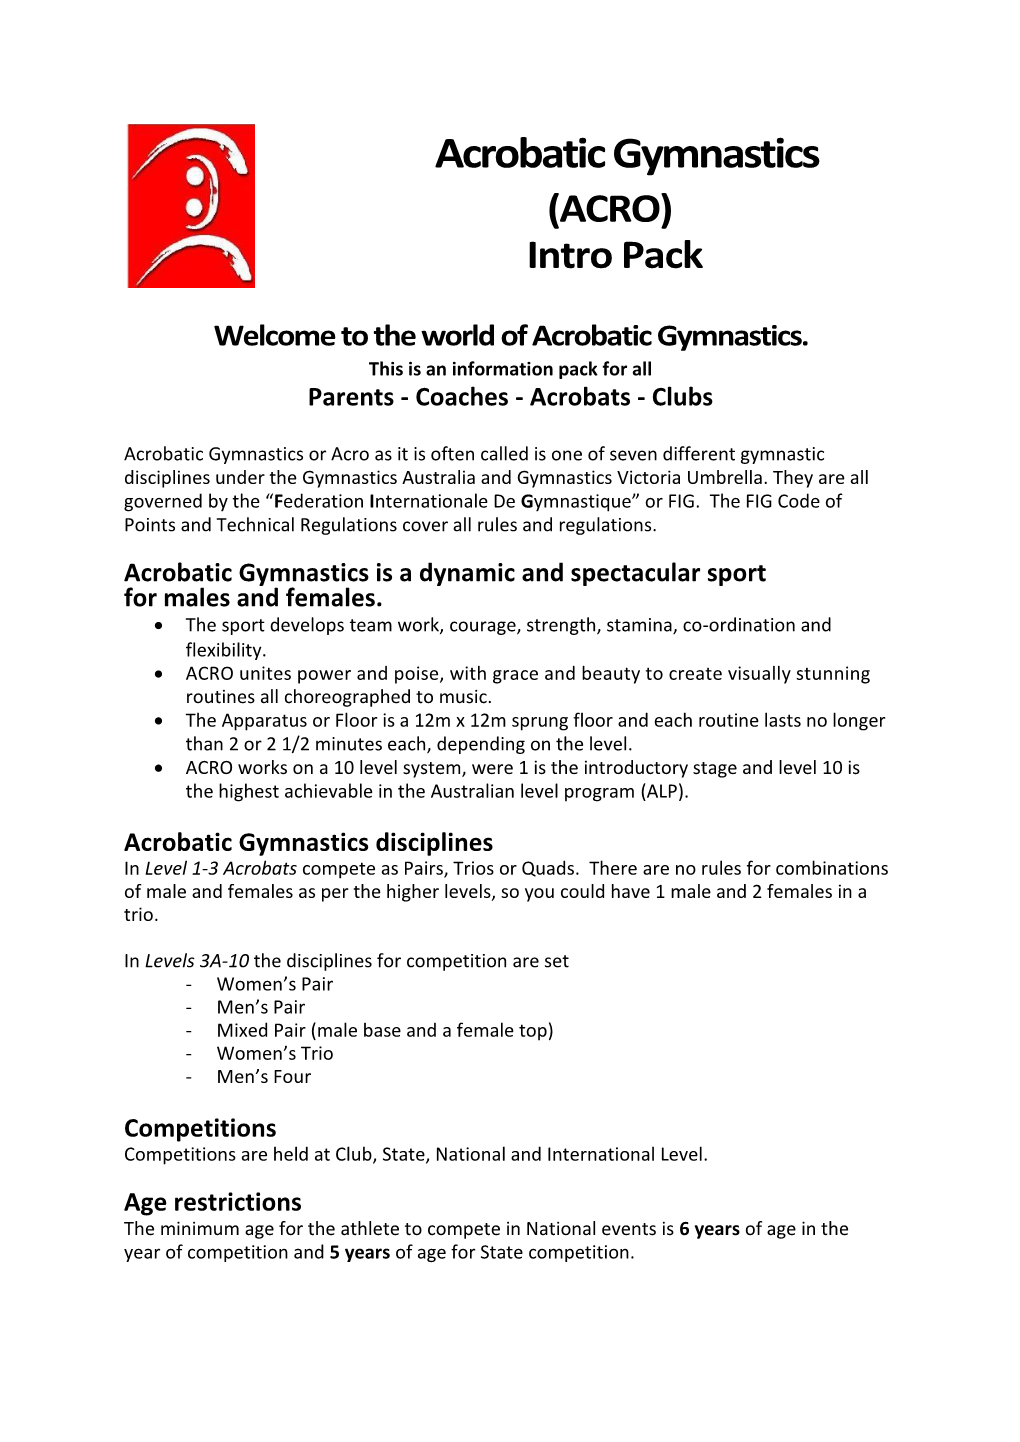 Acrobatic Gymnastics (ACRO) Intro Pack